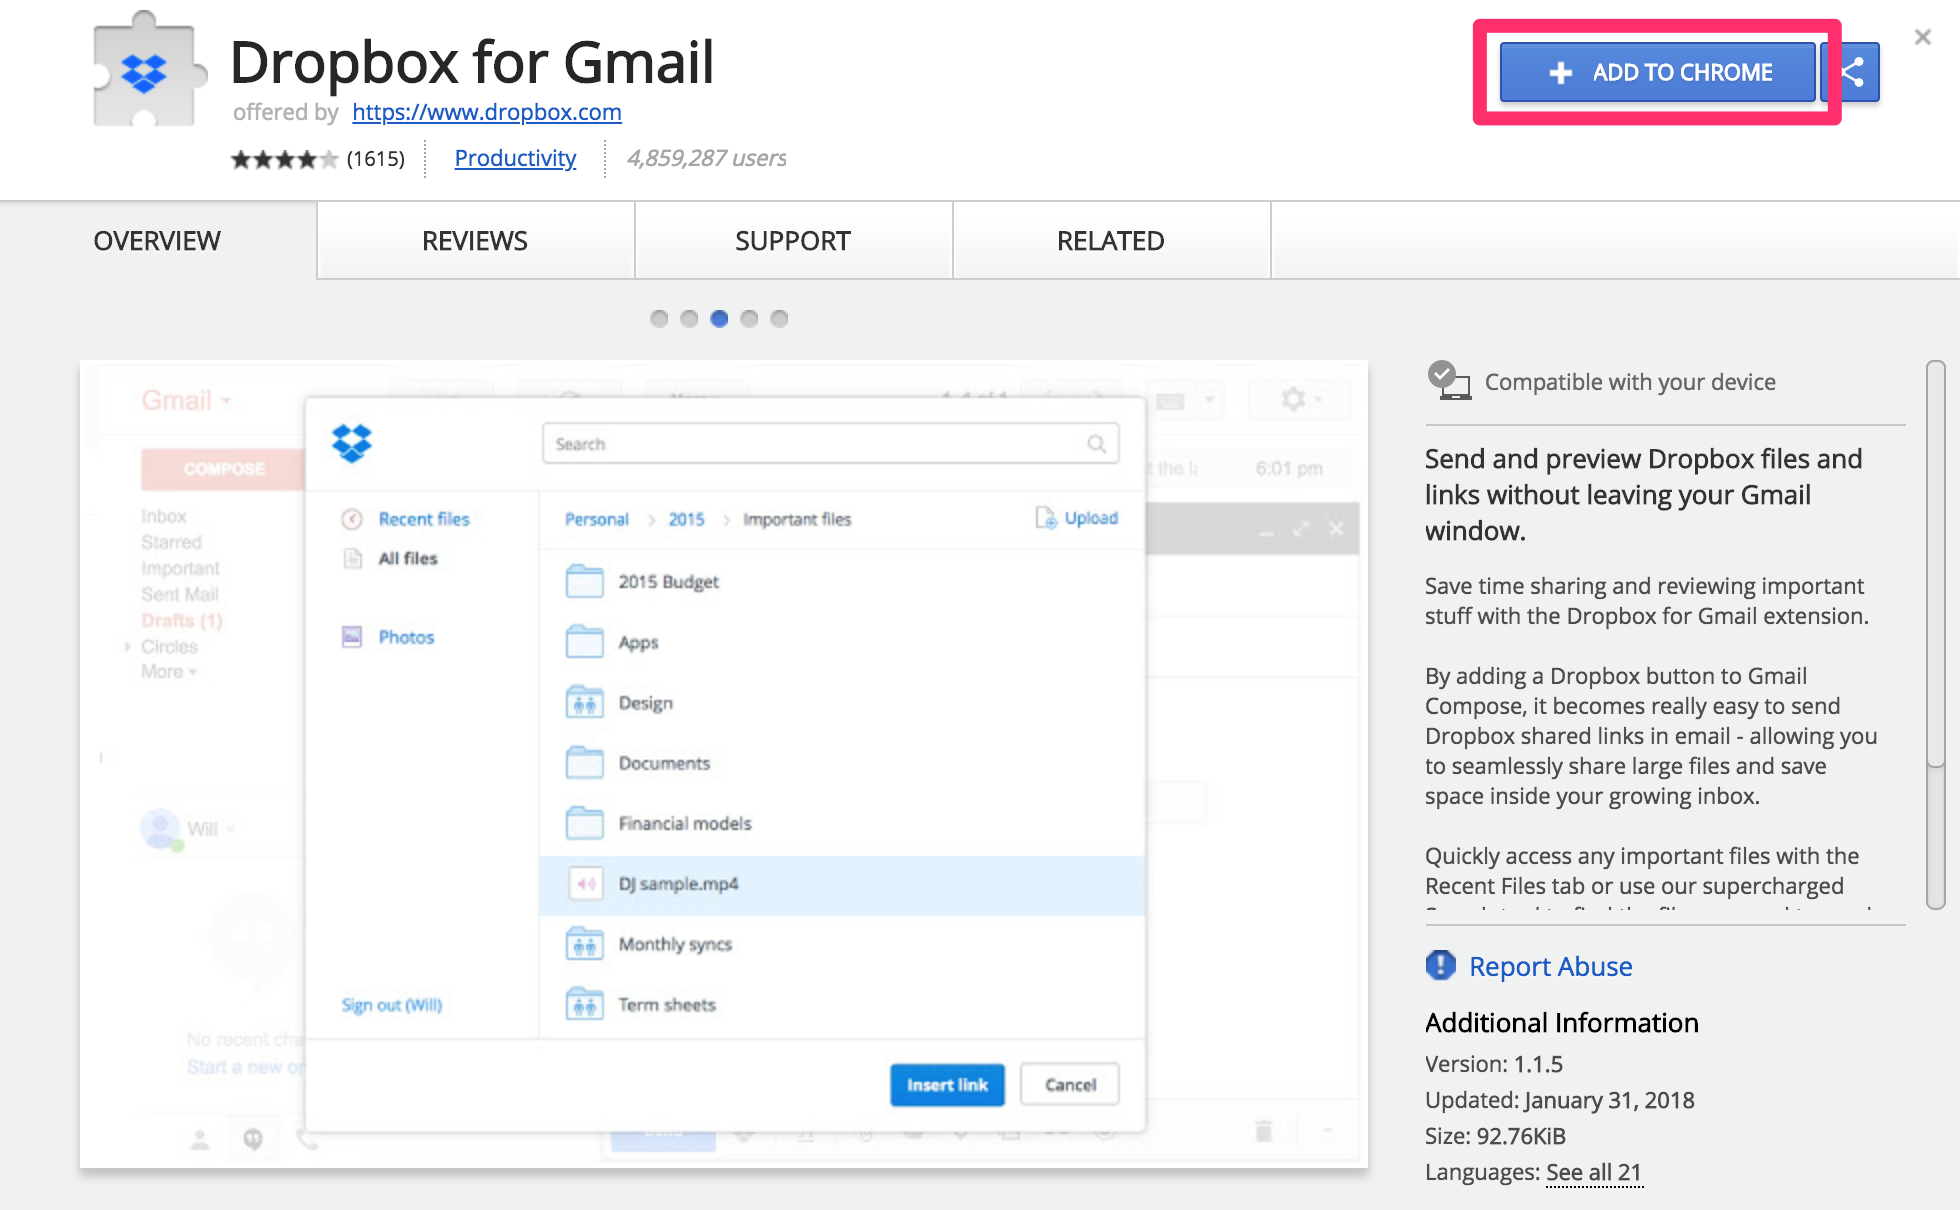 Chrome ウェブストアの Dropbox for Gmail にアクセスし、ADD TO CHROME をクリックします